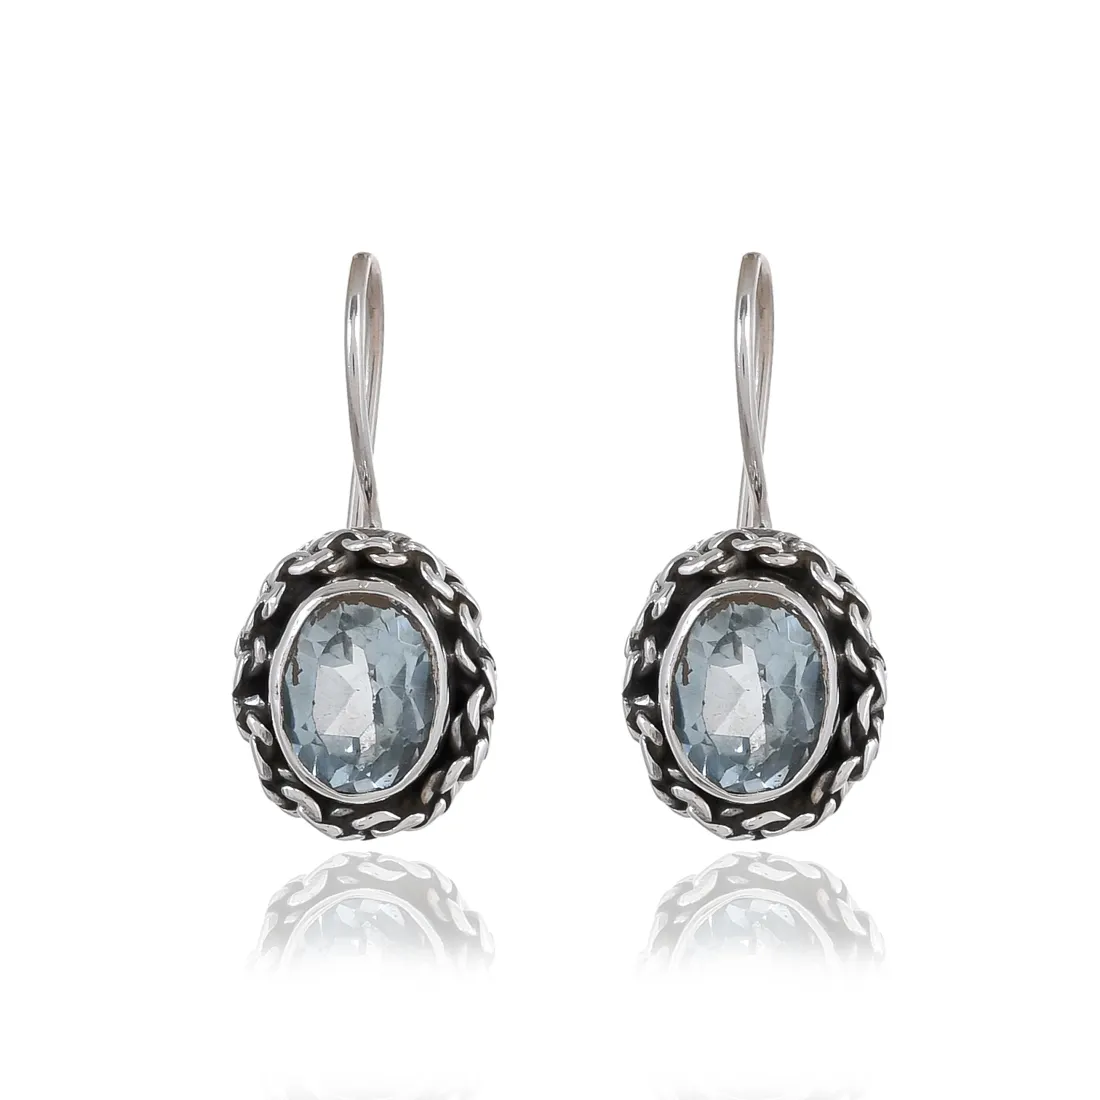 Silver Earrings Online Sterling Silver Jewelry best buy Sterling Silver Earrings